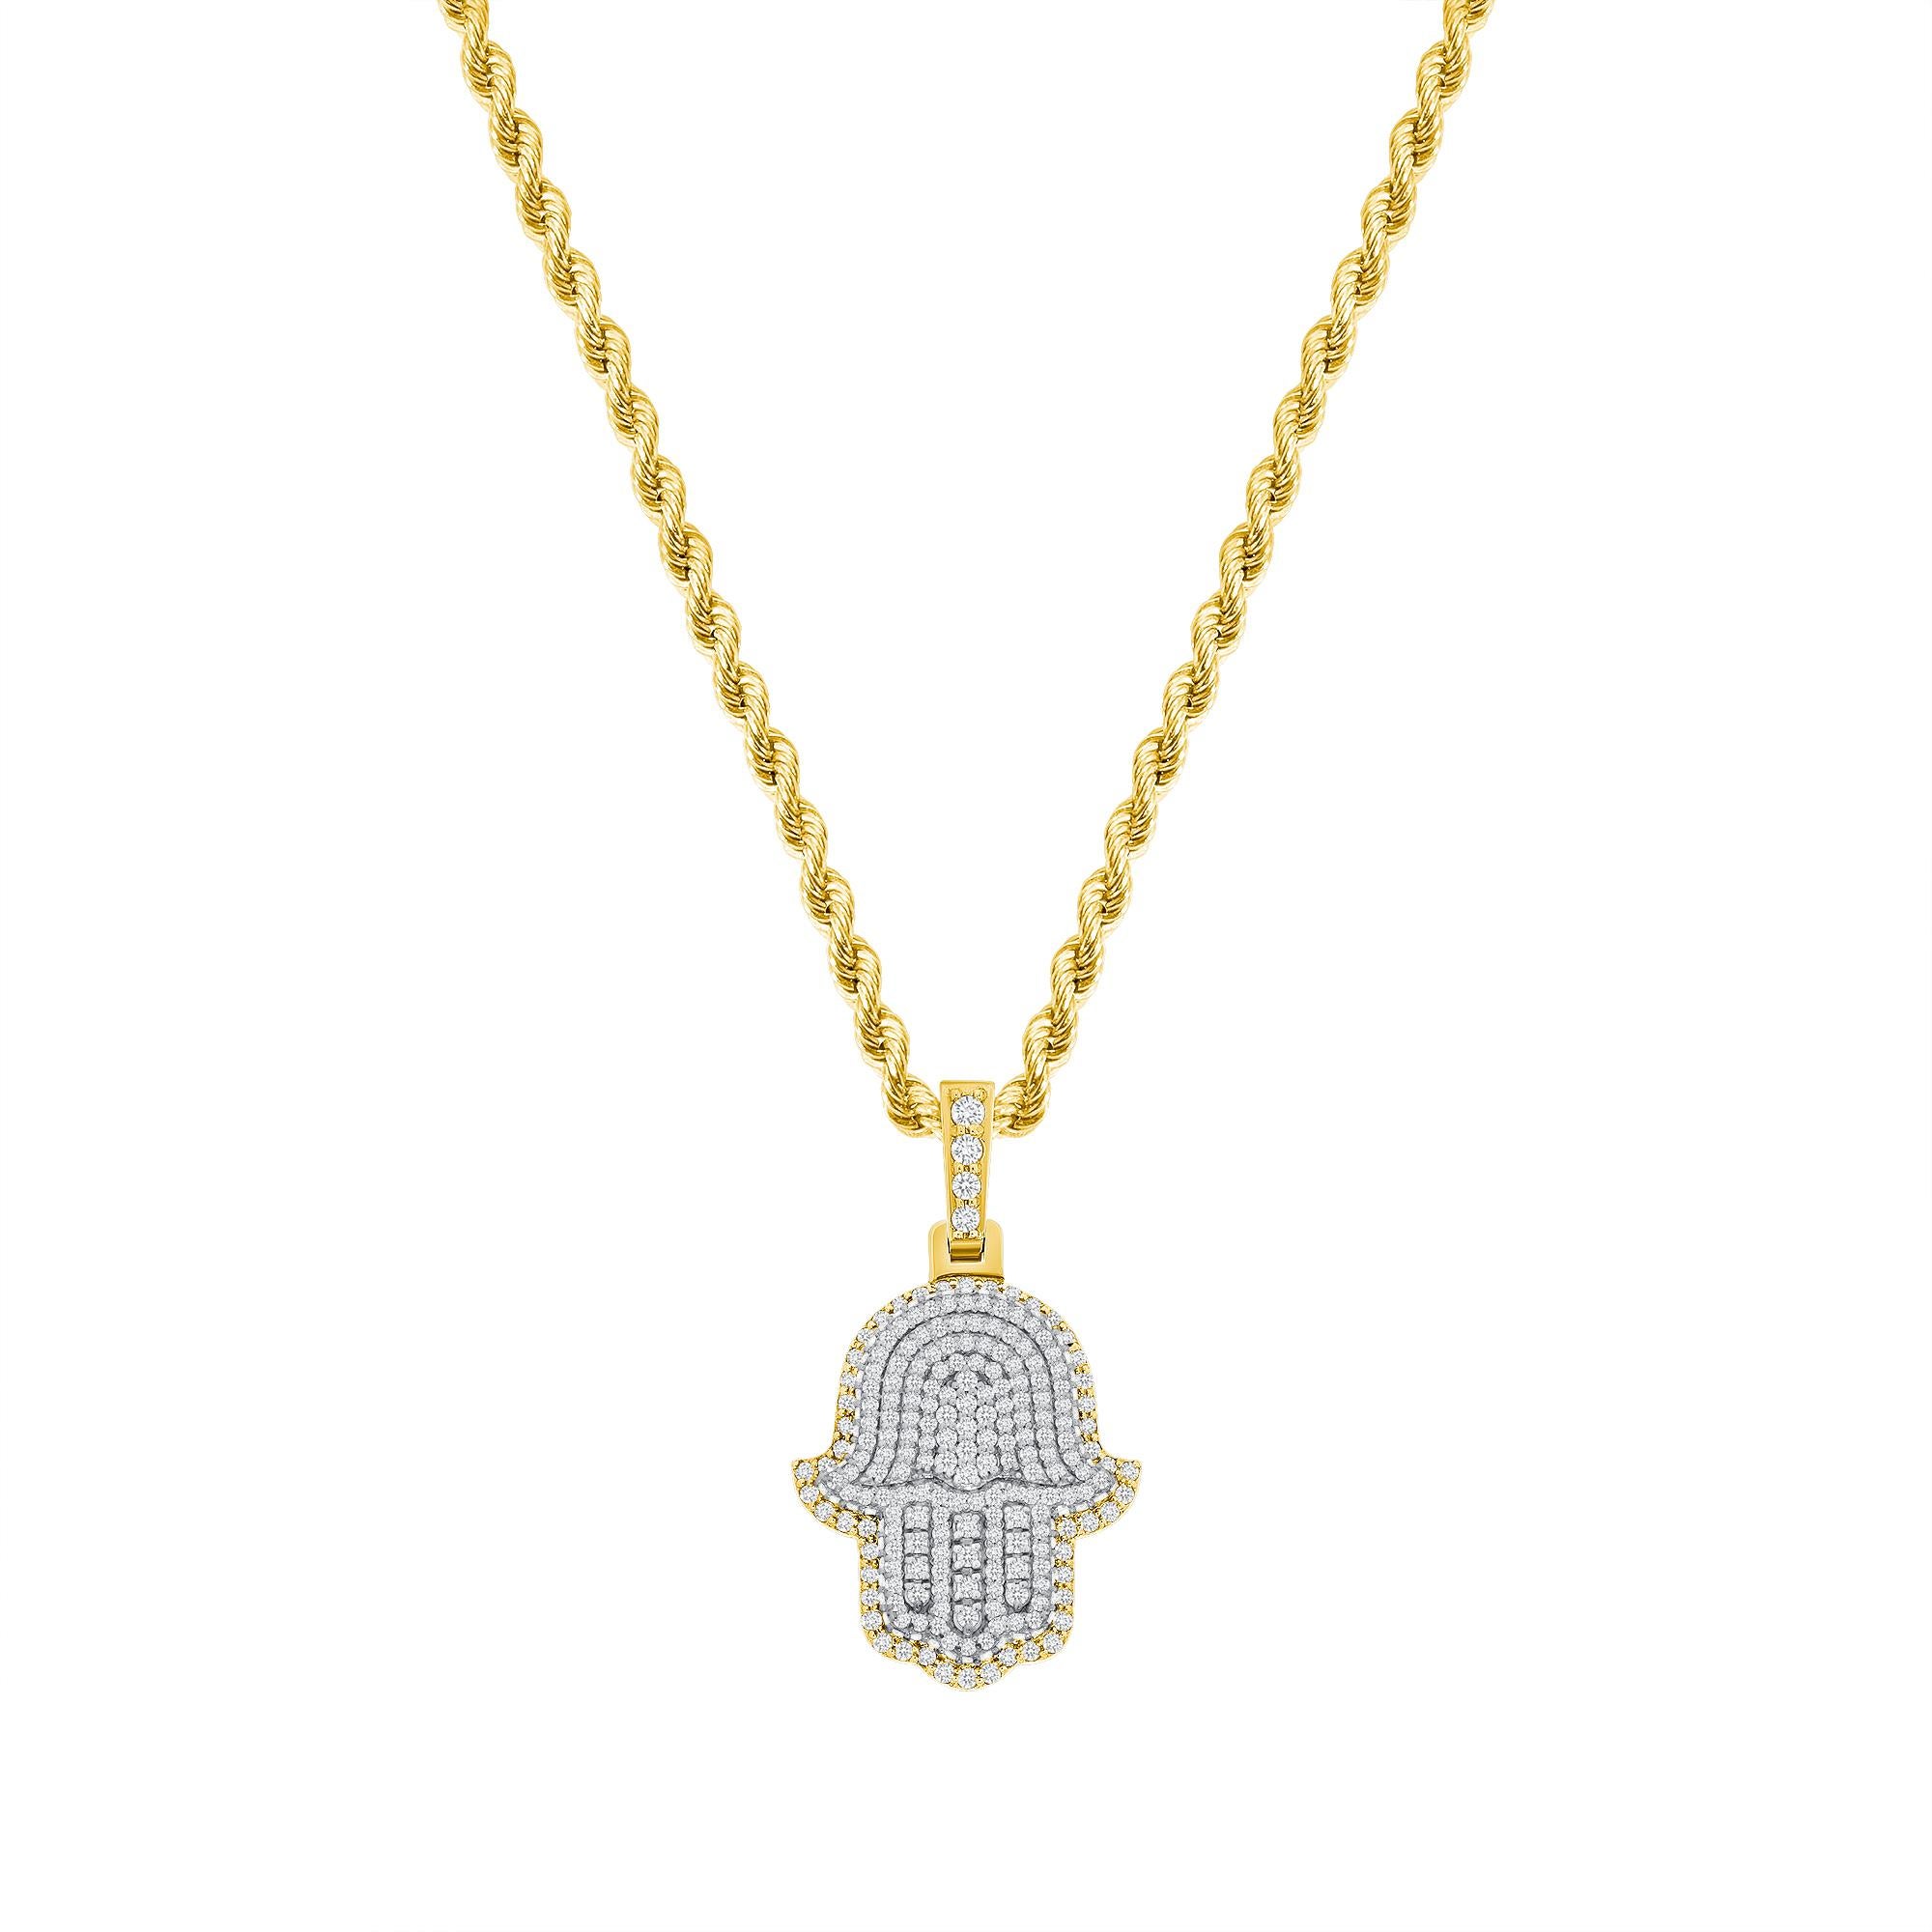 Ce collier en diamants Hamsa offre un look à la fois spirituel et tendance. 

Métal : Or 14k
Taille du diamant : Ronde
Nombre total de carats de diamants : 2 carats
Clarté du diamant : VS
Couleur du diamant : F-G
Longueur du collier : 18